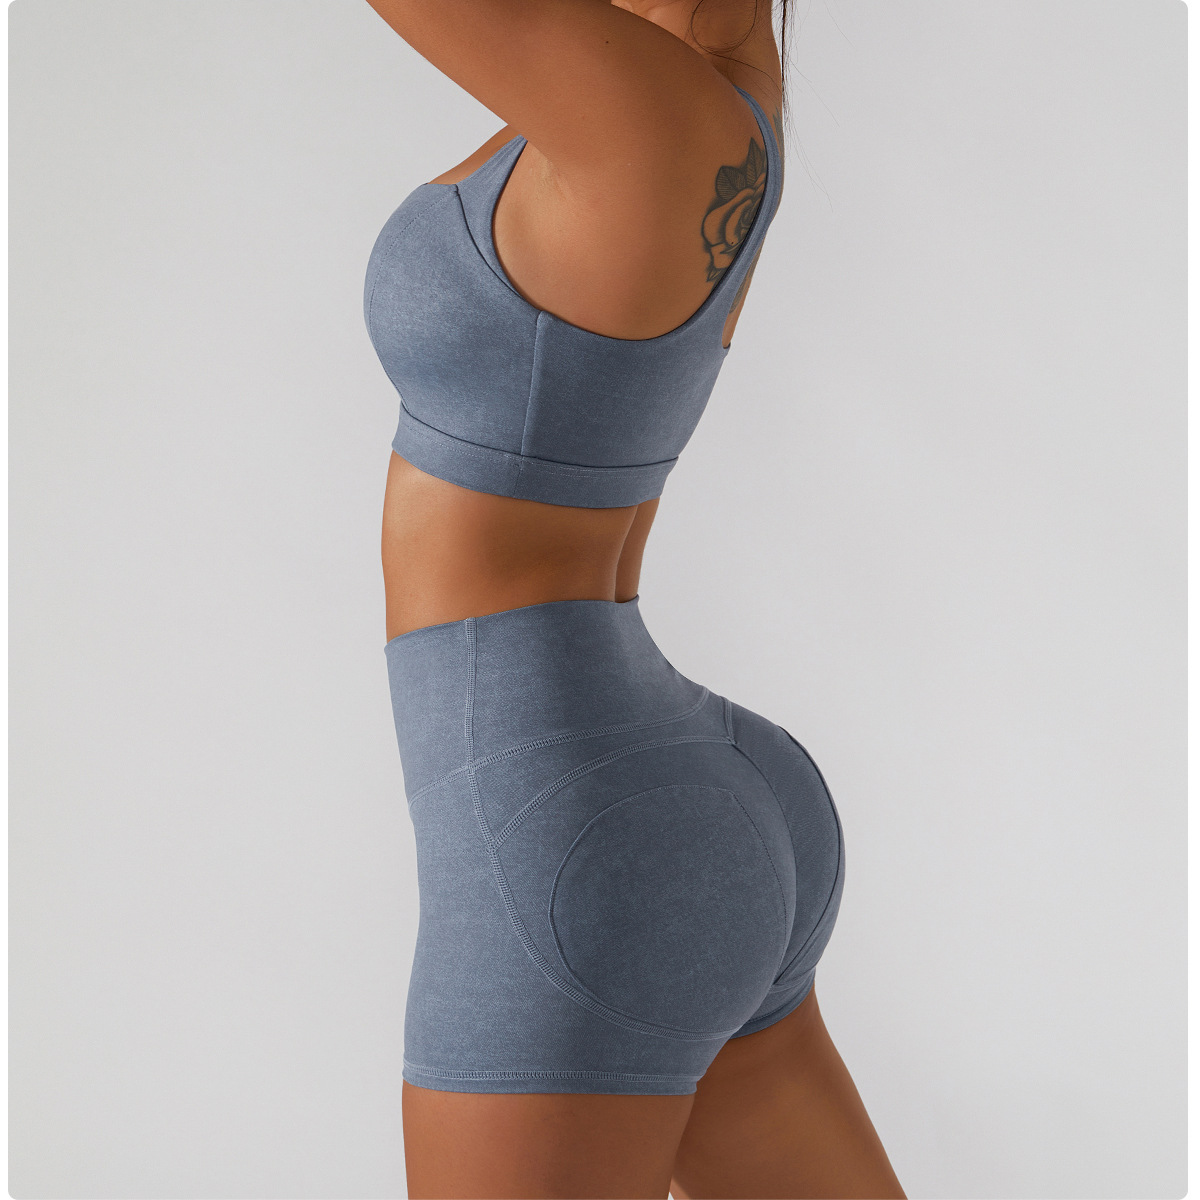 Ke Yoga Wear Sports Underwear Female Beauty Back Running Fitness